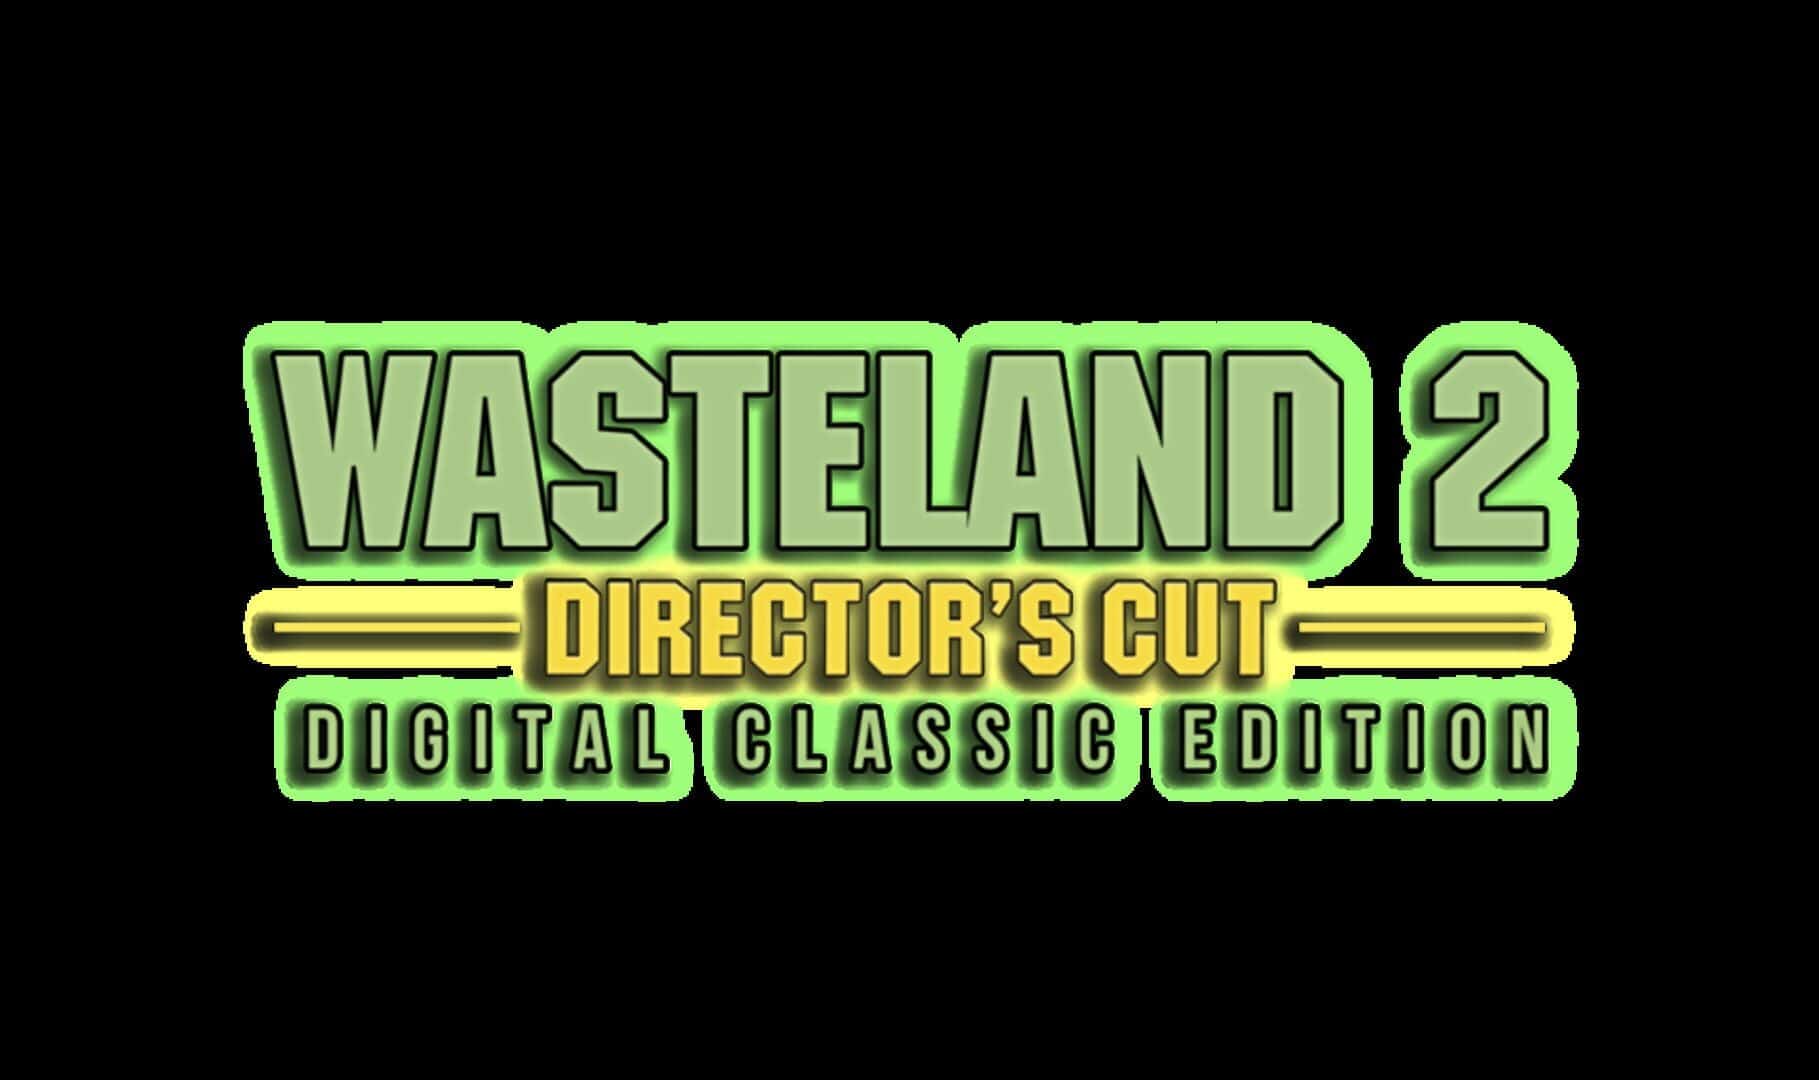 Wasteland 2: Director's Cut - Digital Classic Edition